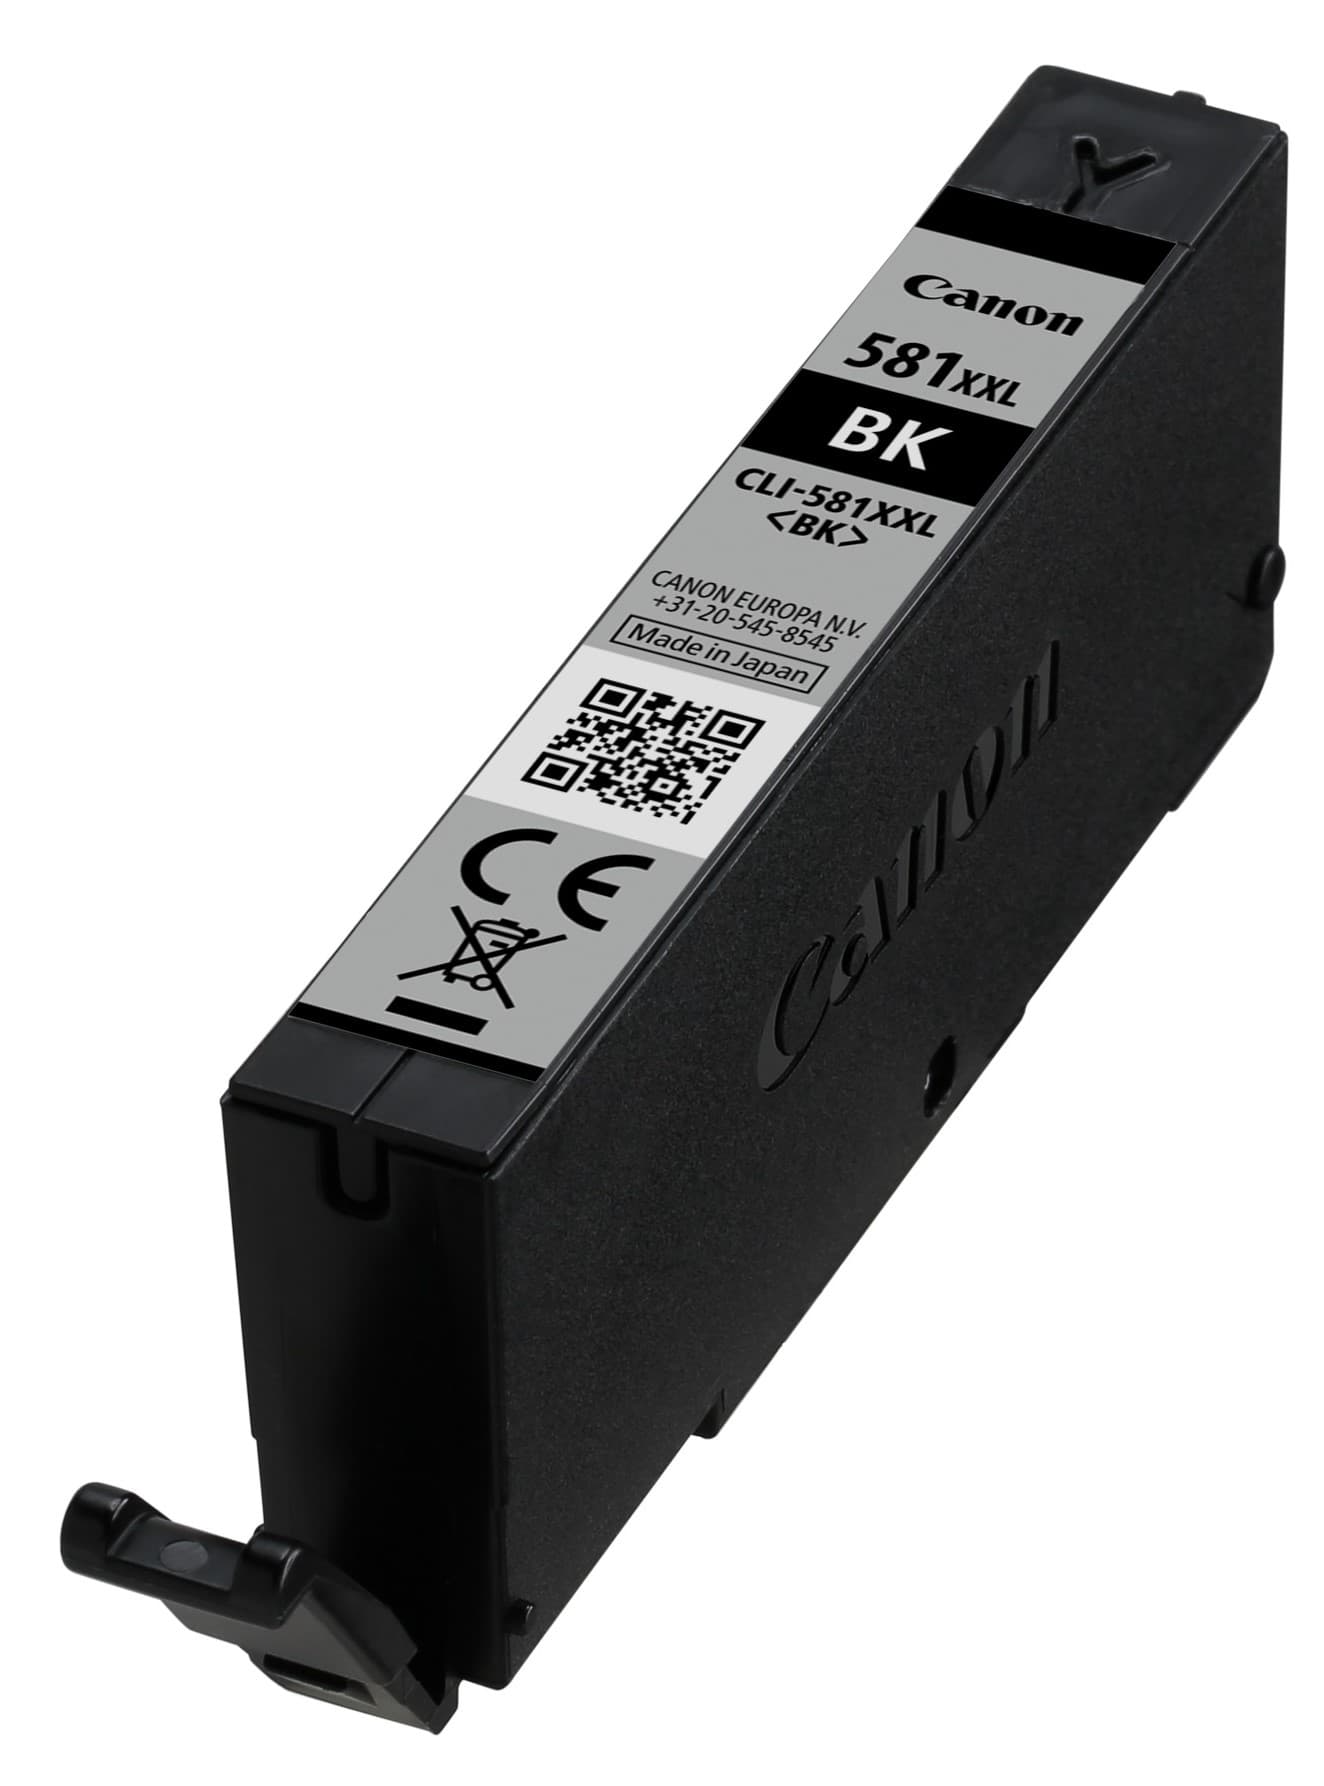 Miniatura obrázku Inkoust Canon CLI-581XXL černý